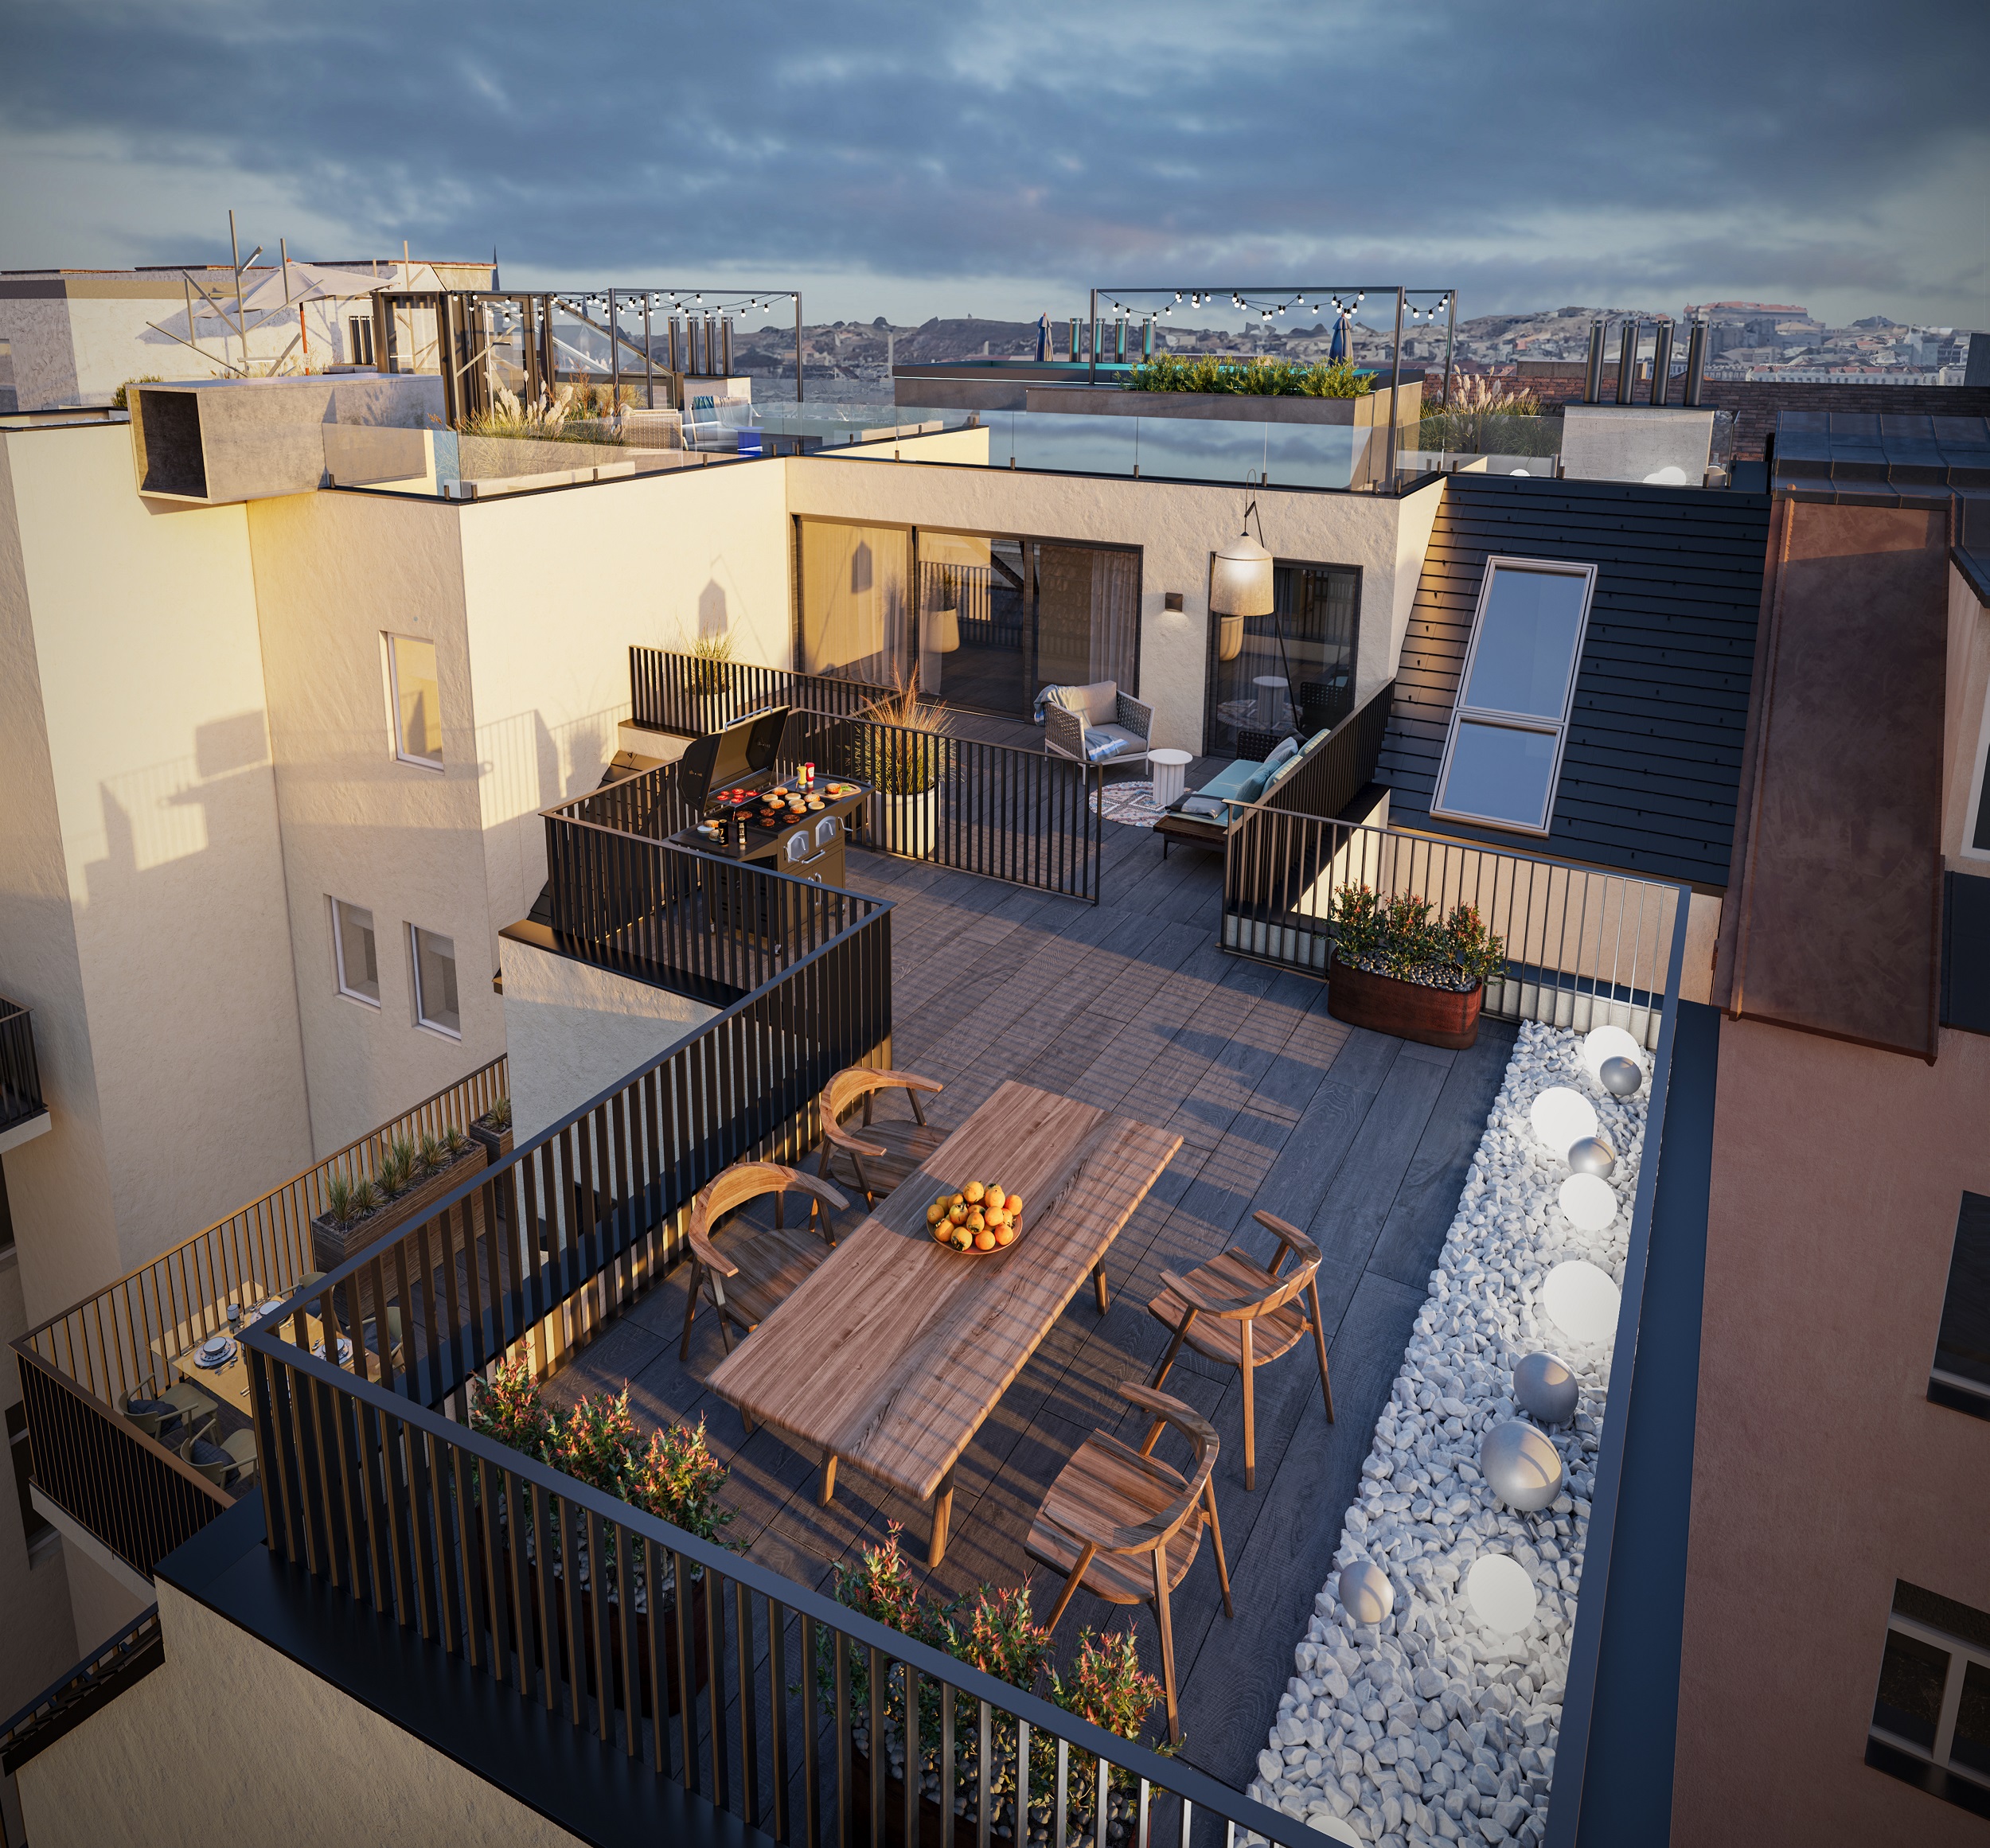 Attraktive Freiflächen – darunter eine großzügige Penthouse-Dachterrasse mit privatem Pool – runden das Immobilienangebot am Alsergrund ab.